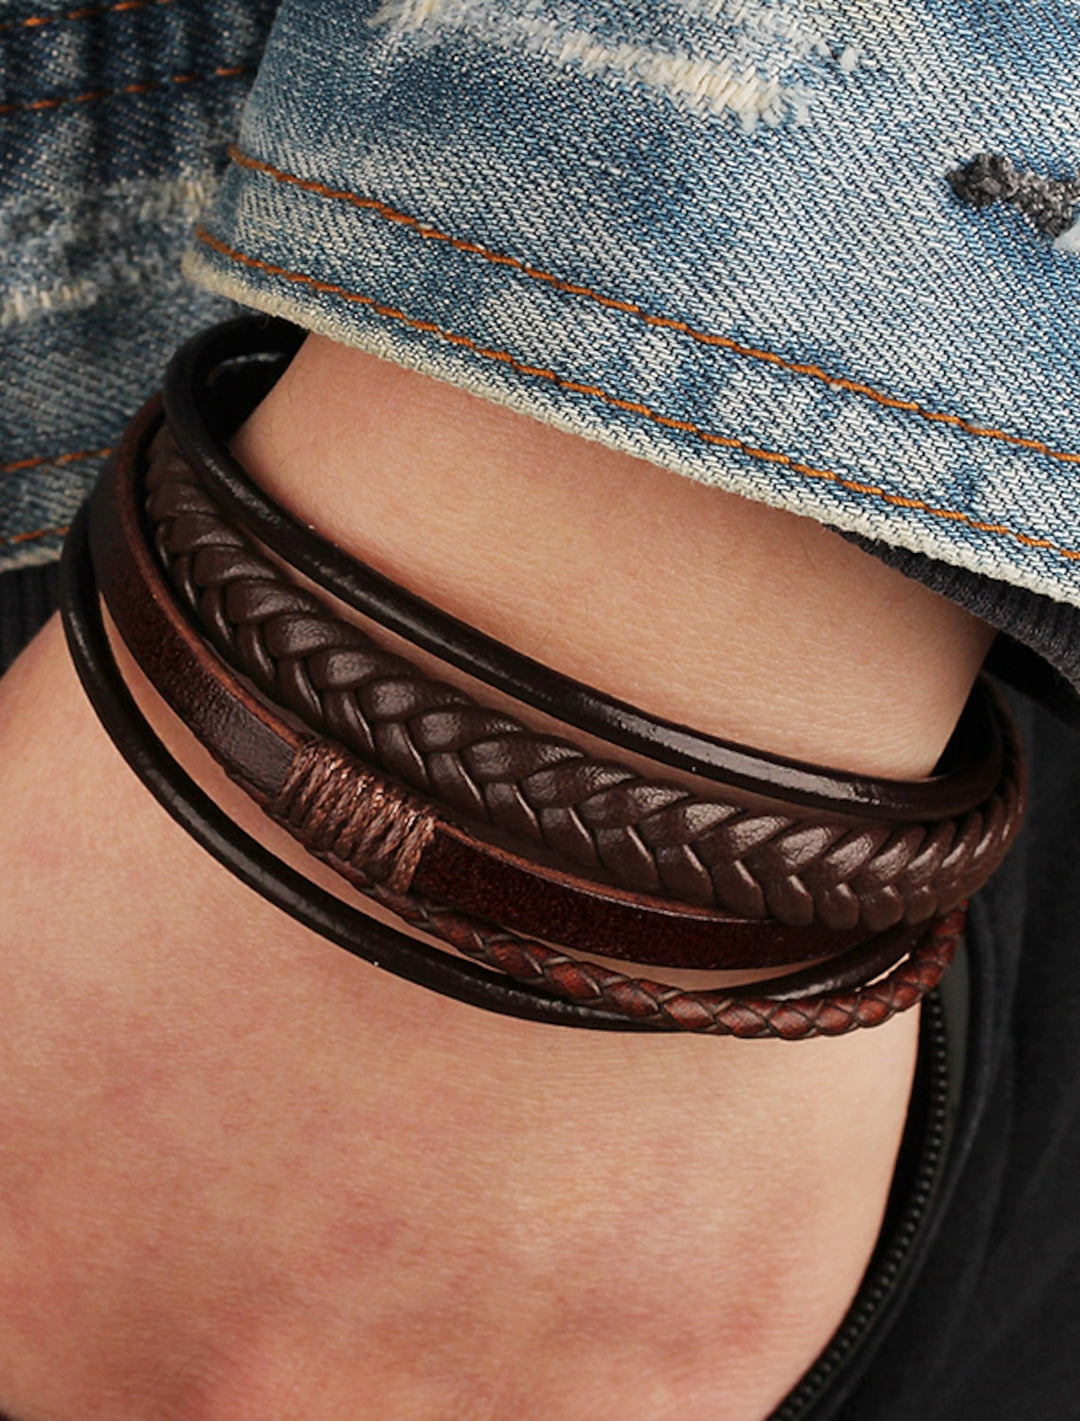 Men's Leather Bracelet Classic Imagine Stylish Simple Ethnic Fashion